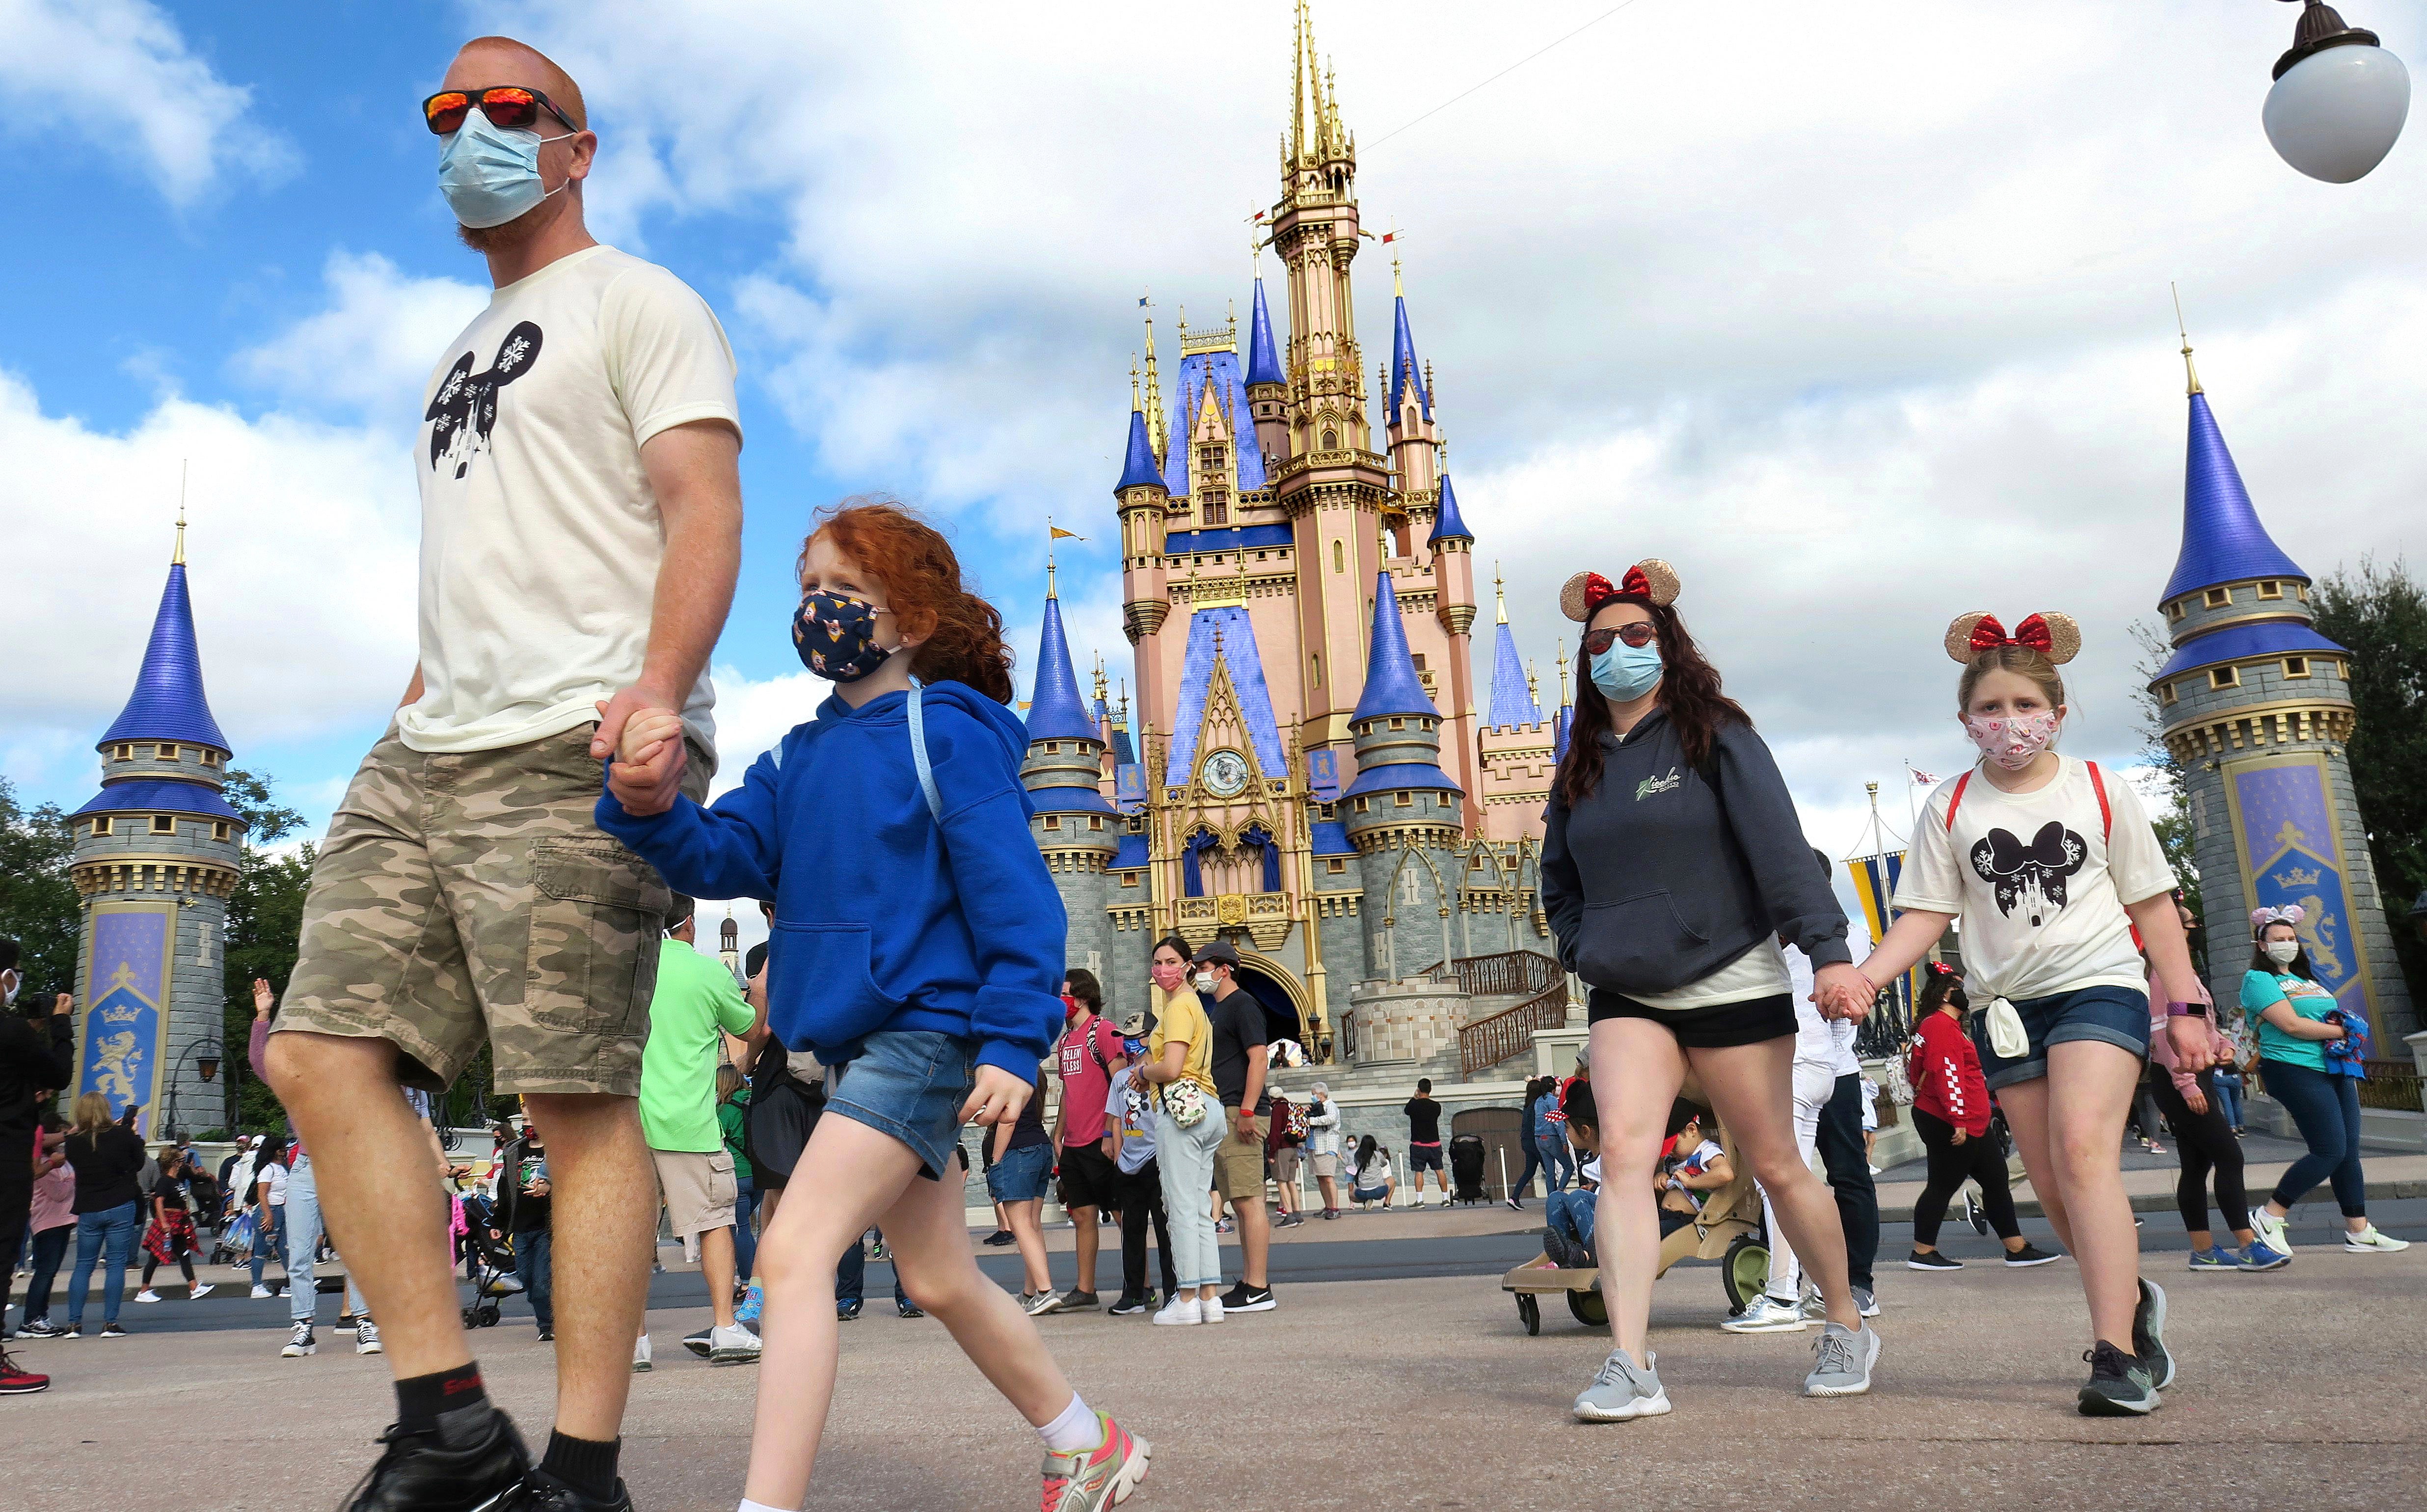 Personas pasean en Disneyland mientras utilizan su cubrebocas como medida de seguridad.&nbsp;